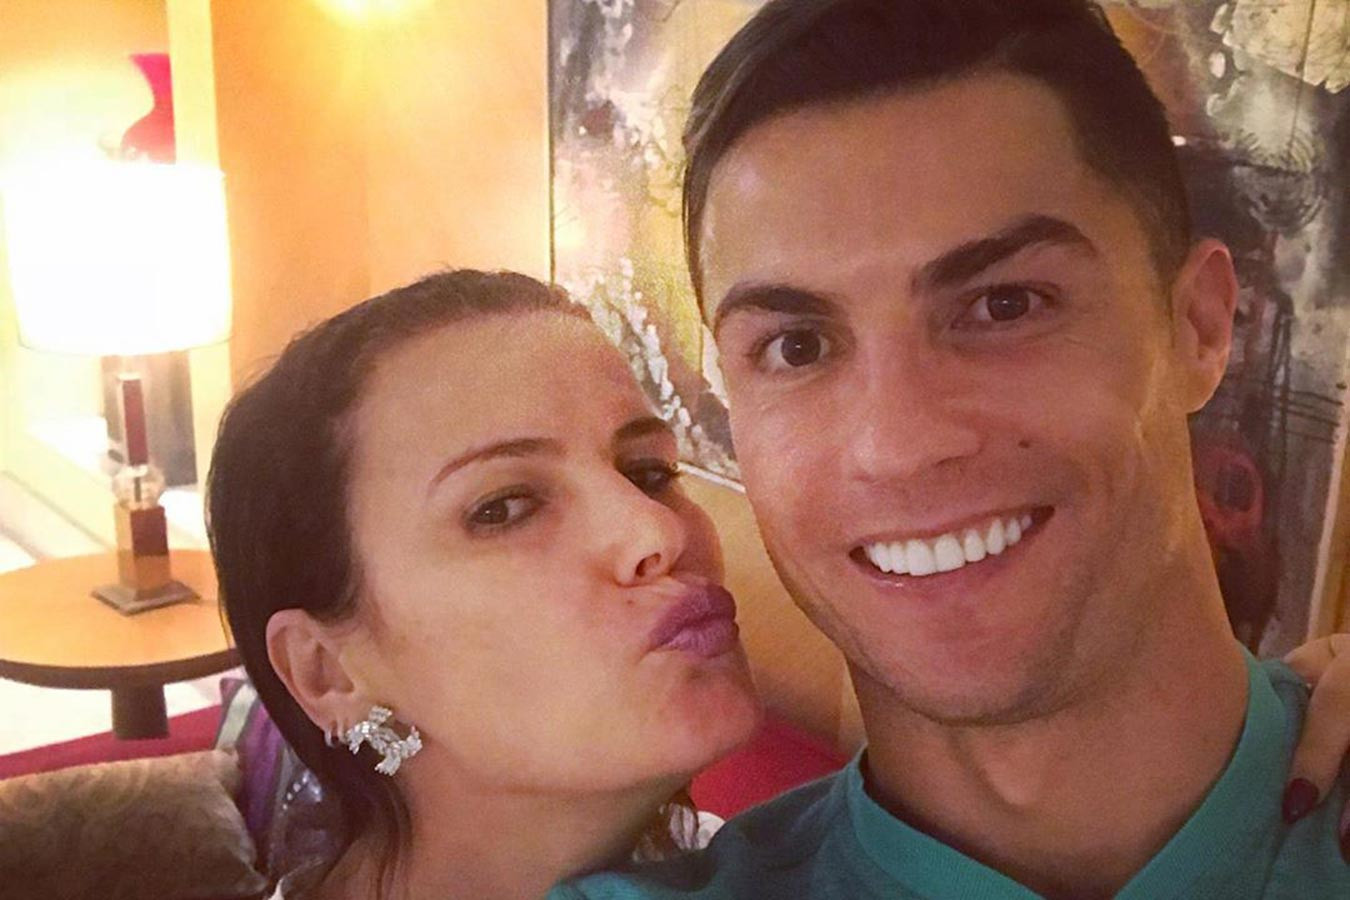 Ronaldonun bacısı aləmi bir-birinə qatdı: "Qarət başladı" - FOTO